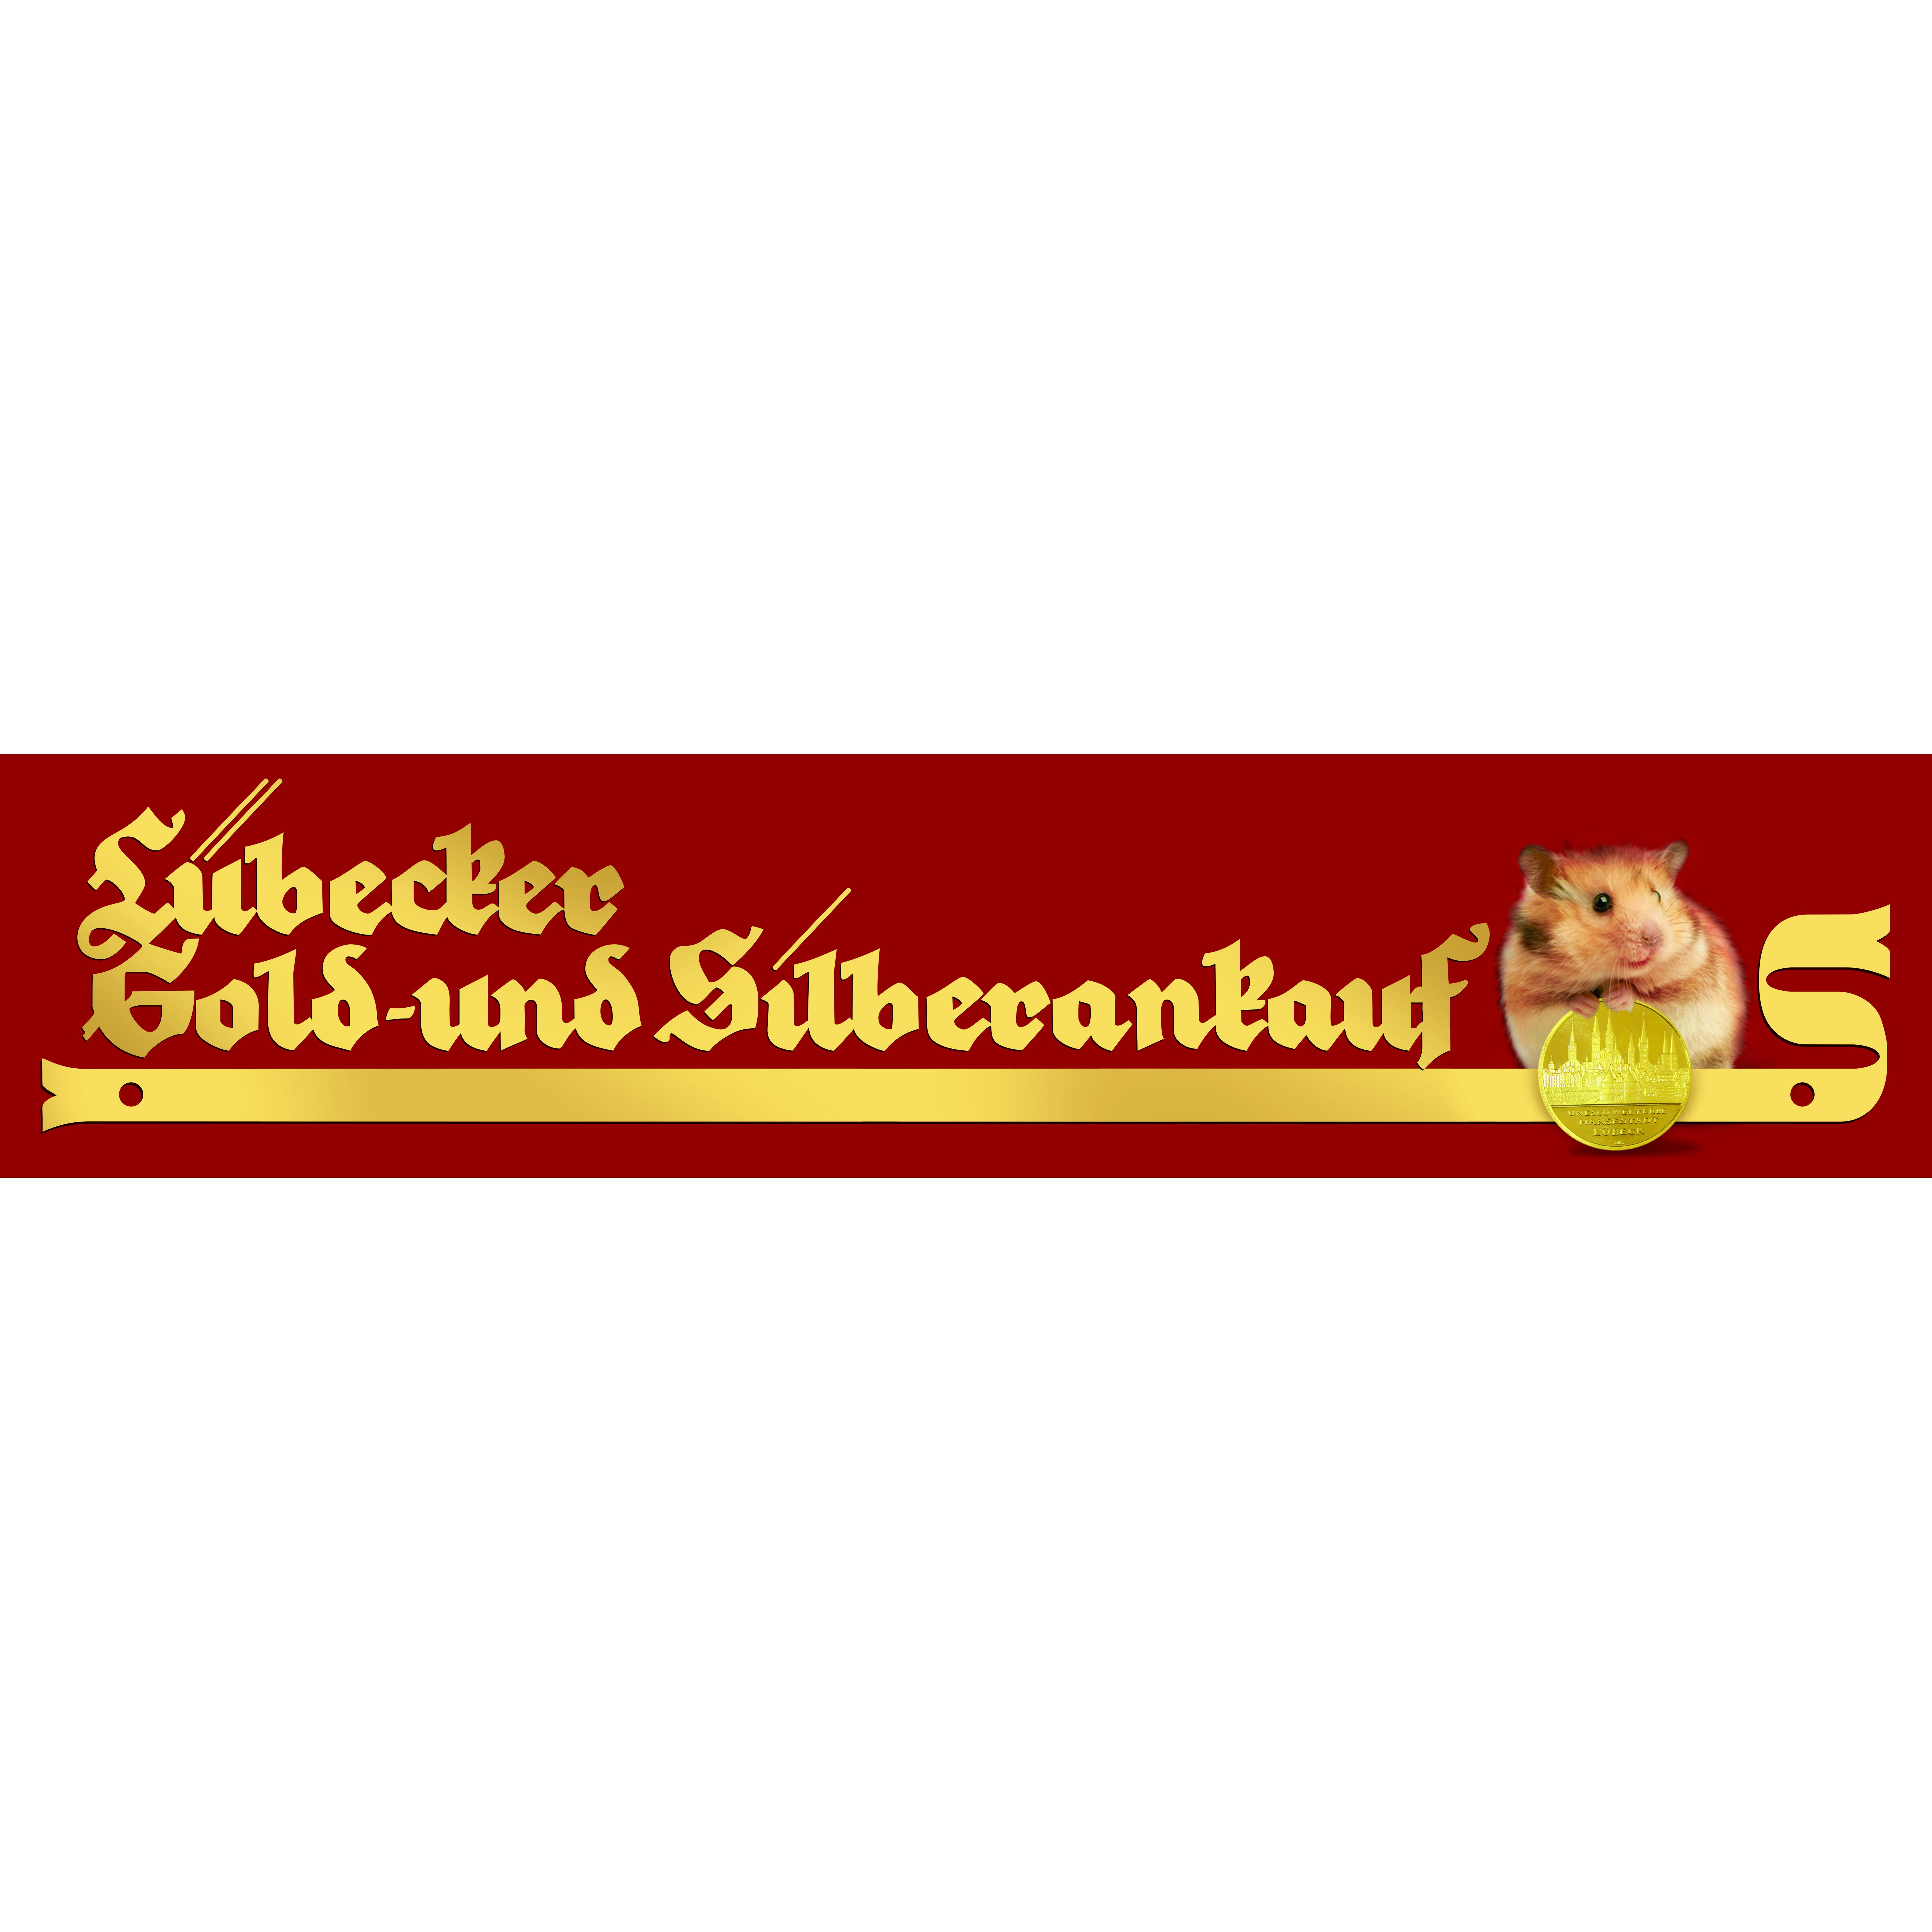 Lübecker Gold- und Silberankauf